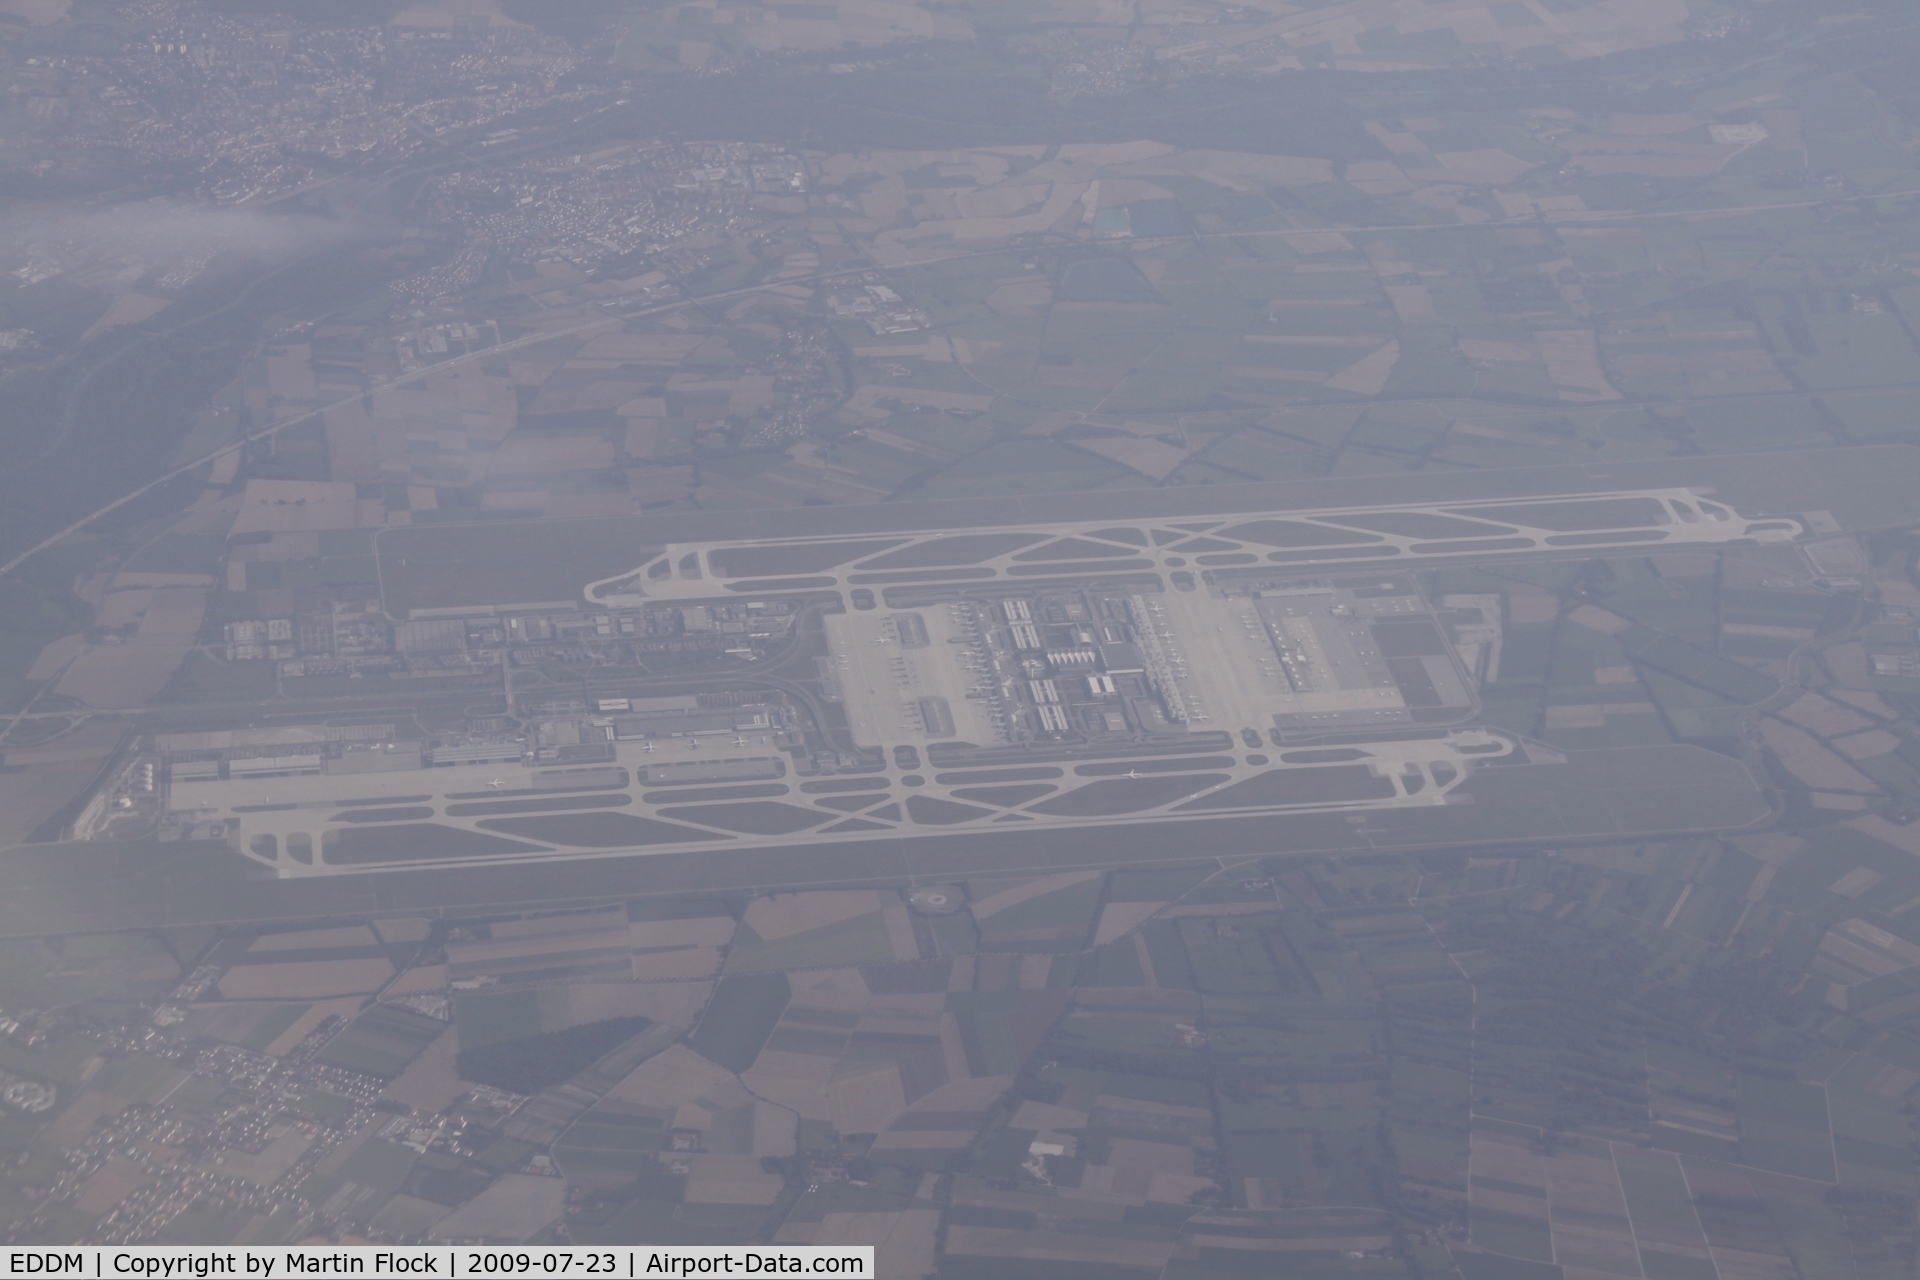 Munich International Airport (Franz Josef Strauß International Airport), Munich Germany (EDDM) - .....